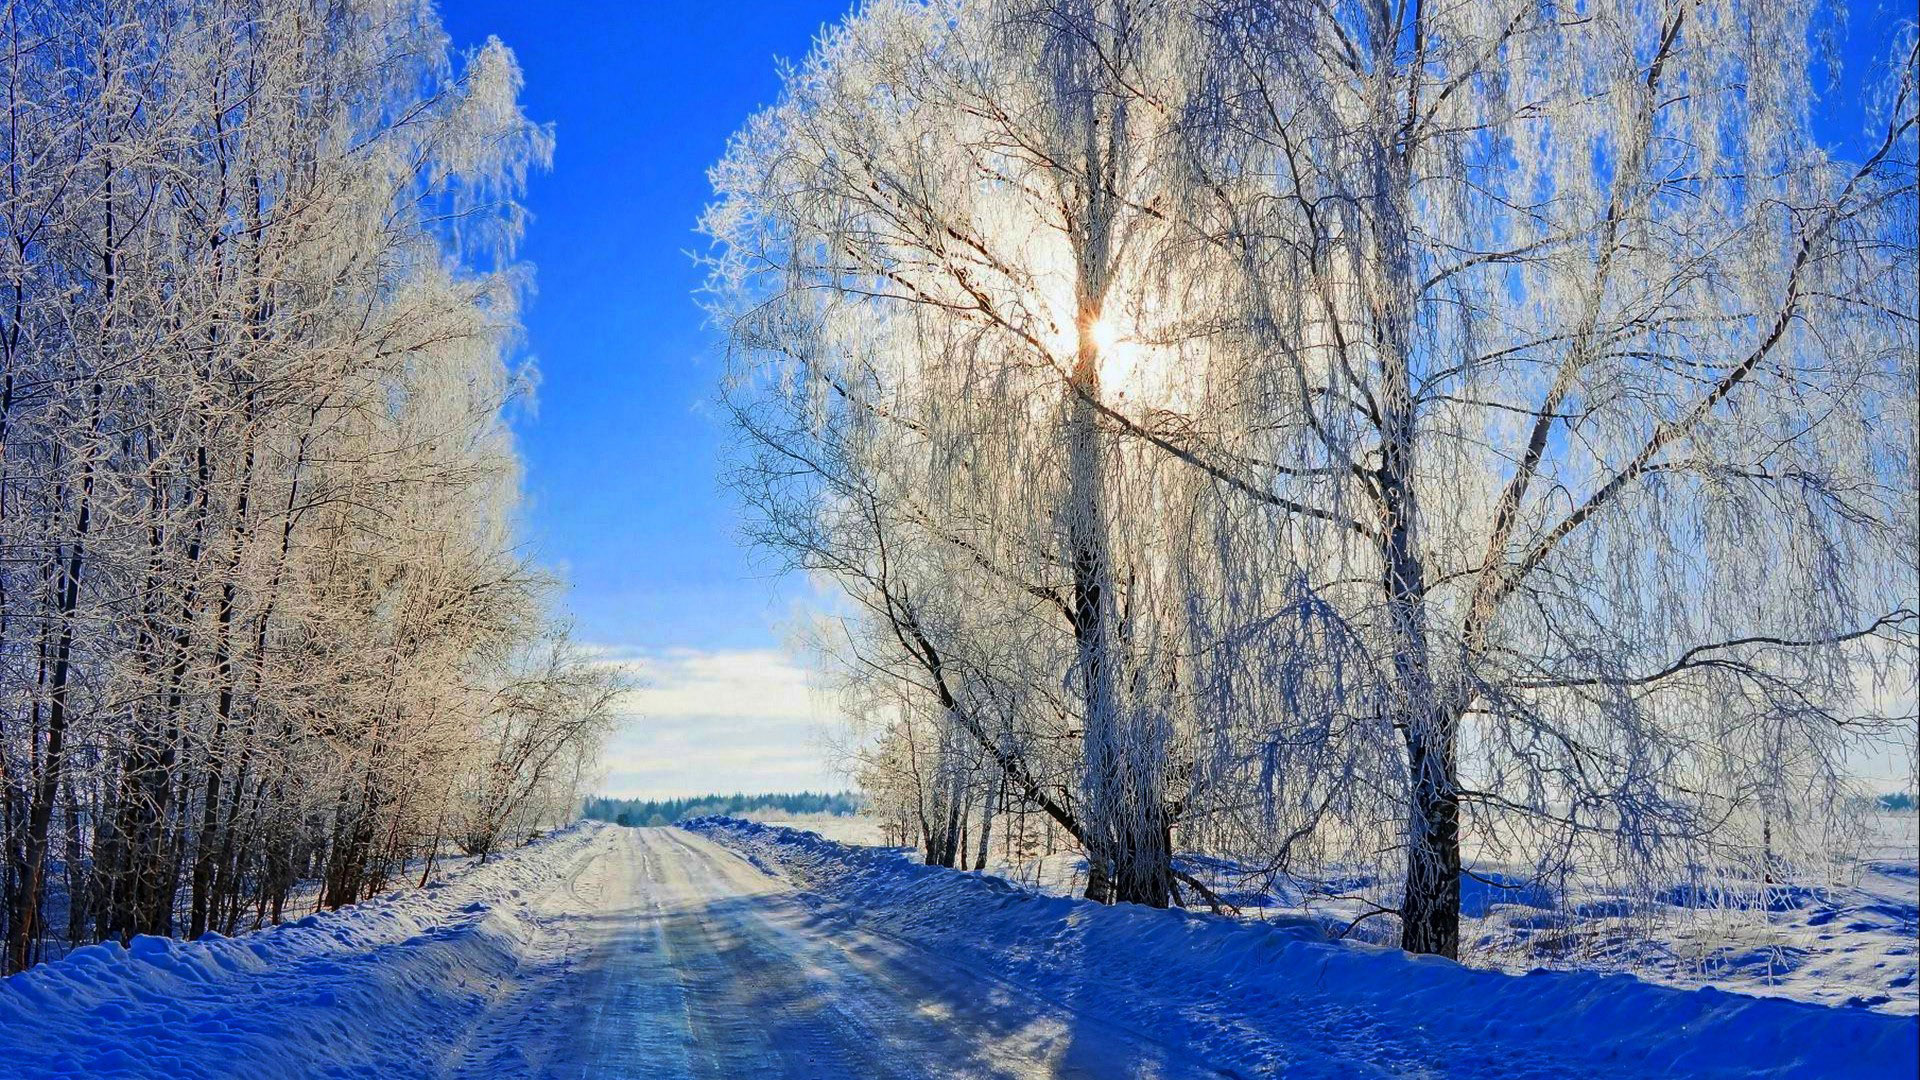 冬天,雪,路,树木,太阳,蓝色雪景,自然风景壁纸